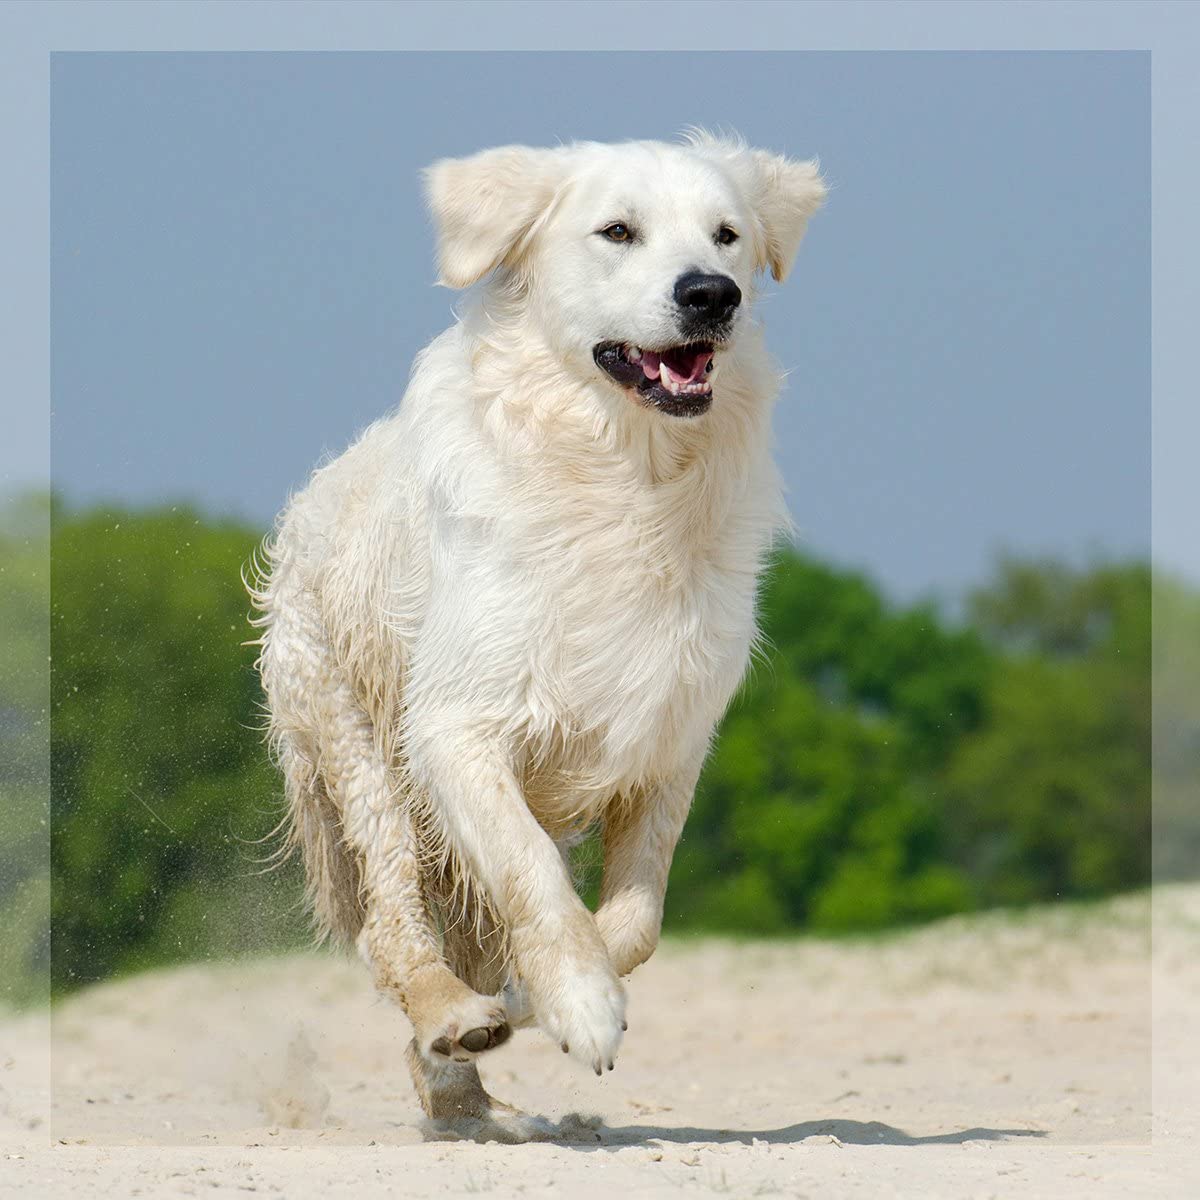  Mejillón de Labios Verdes de Nueva Zelanda para Perros y Gatos en Polvo (100gr.) | Condroprotector 100% Natural con Glucosamina | Indicado para Articulaciones y Movilidad en Perros y Gatos | GreenPet® 